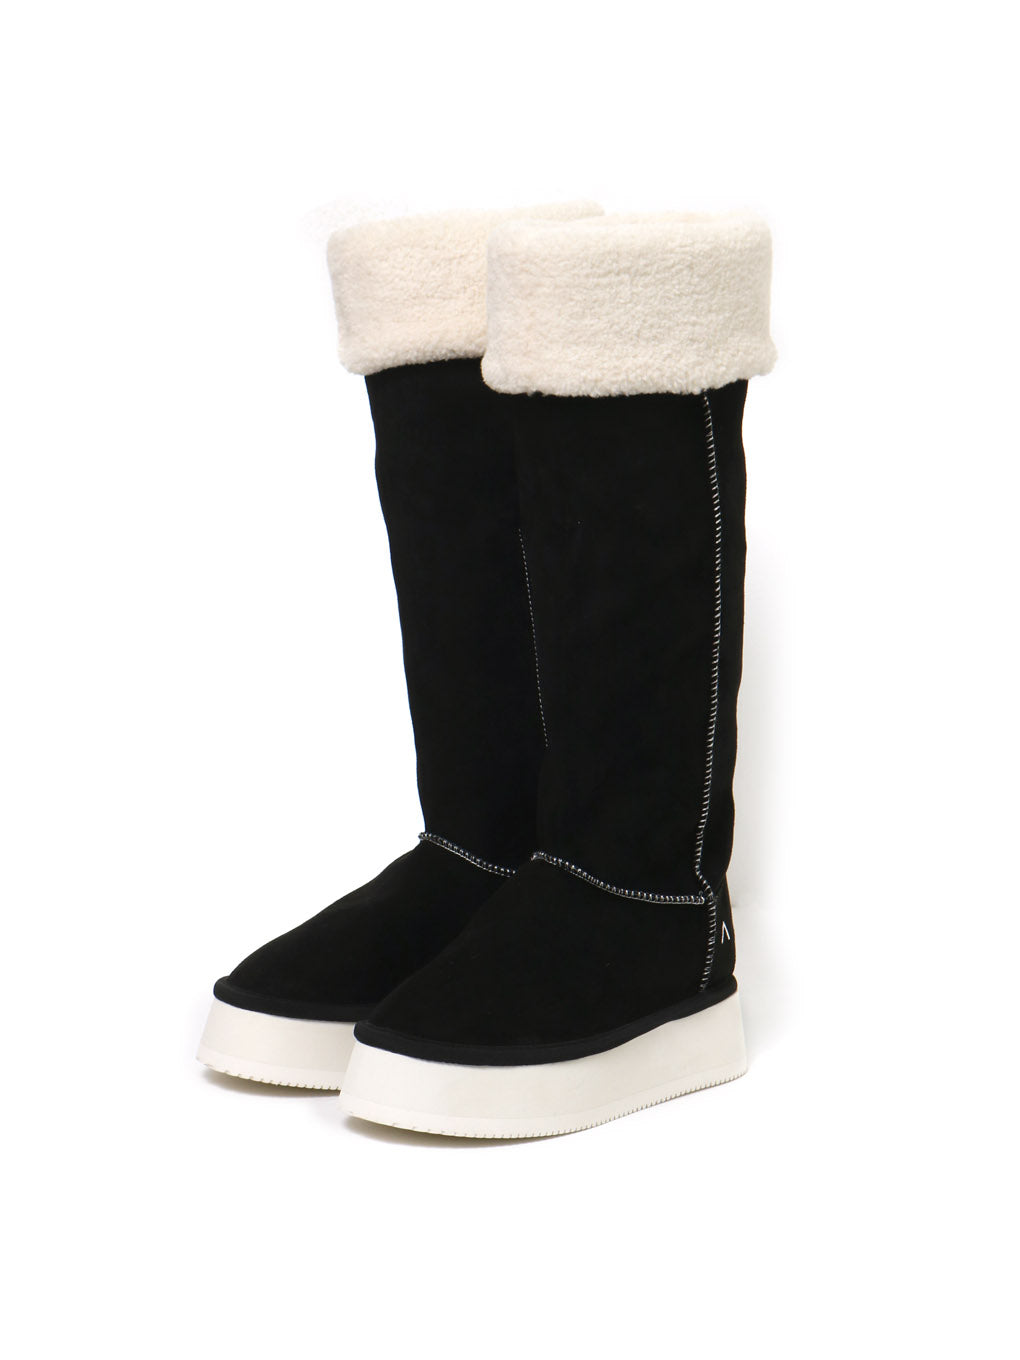 ANDMARY】Gigi mouton boots